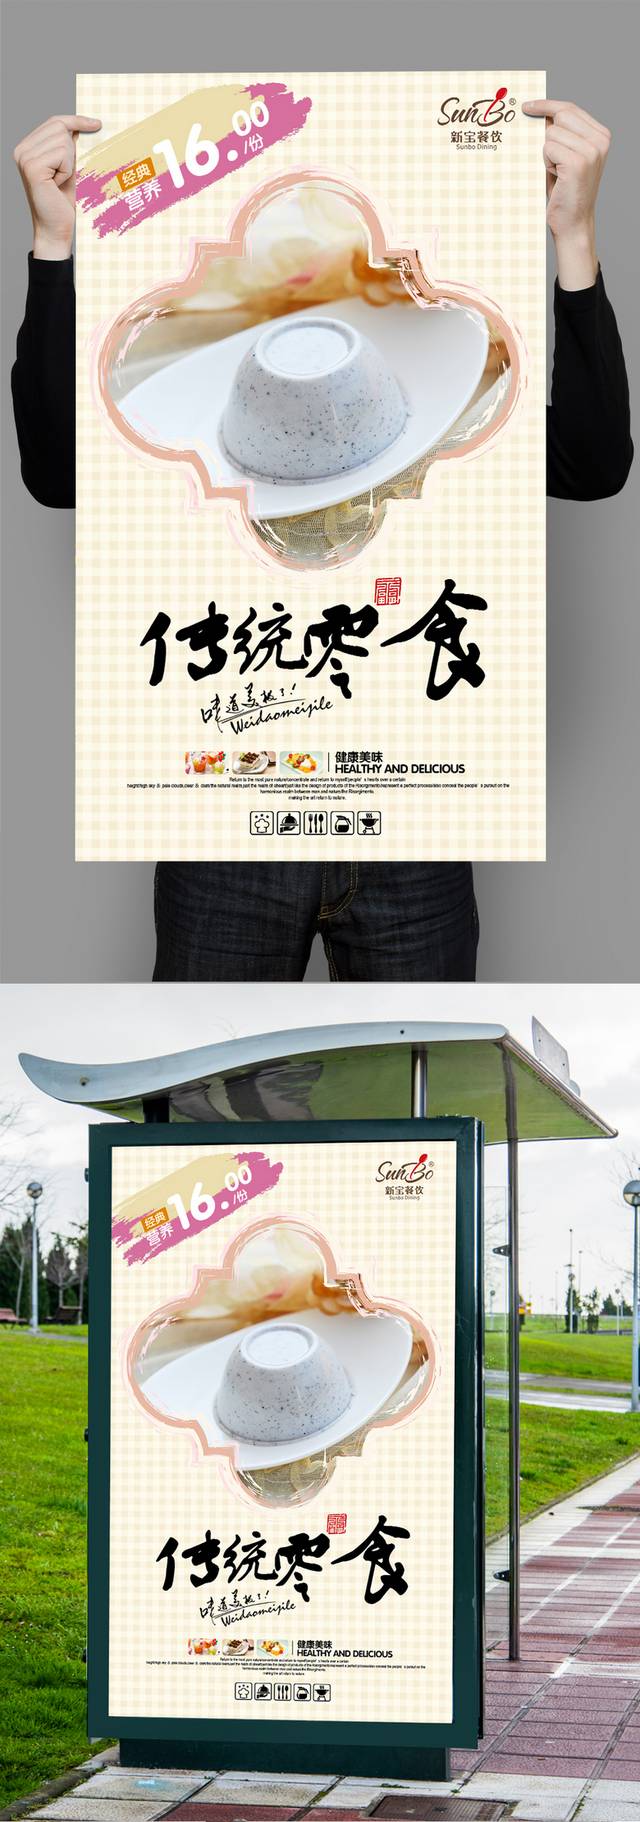 清新高档果冻零食宣传海报设计